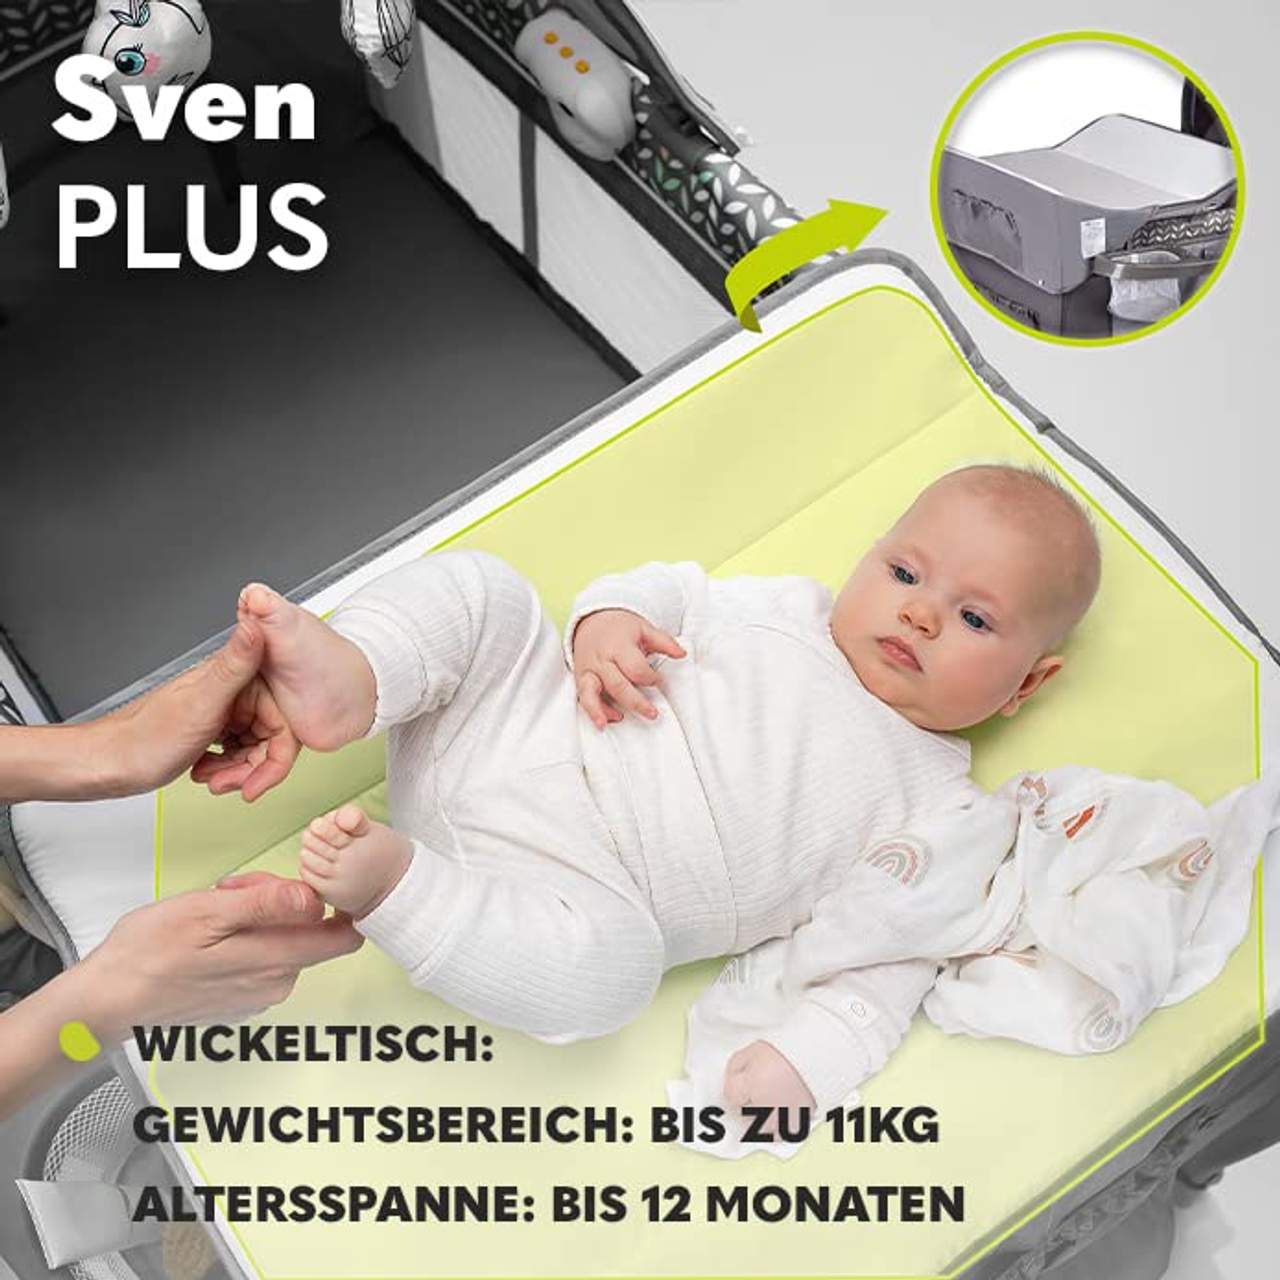 Lionelo Sven Plus 4 in 1 Baby Bett Laufstall Baby ab Geburt bis 15 kg Wickelauflage